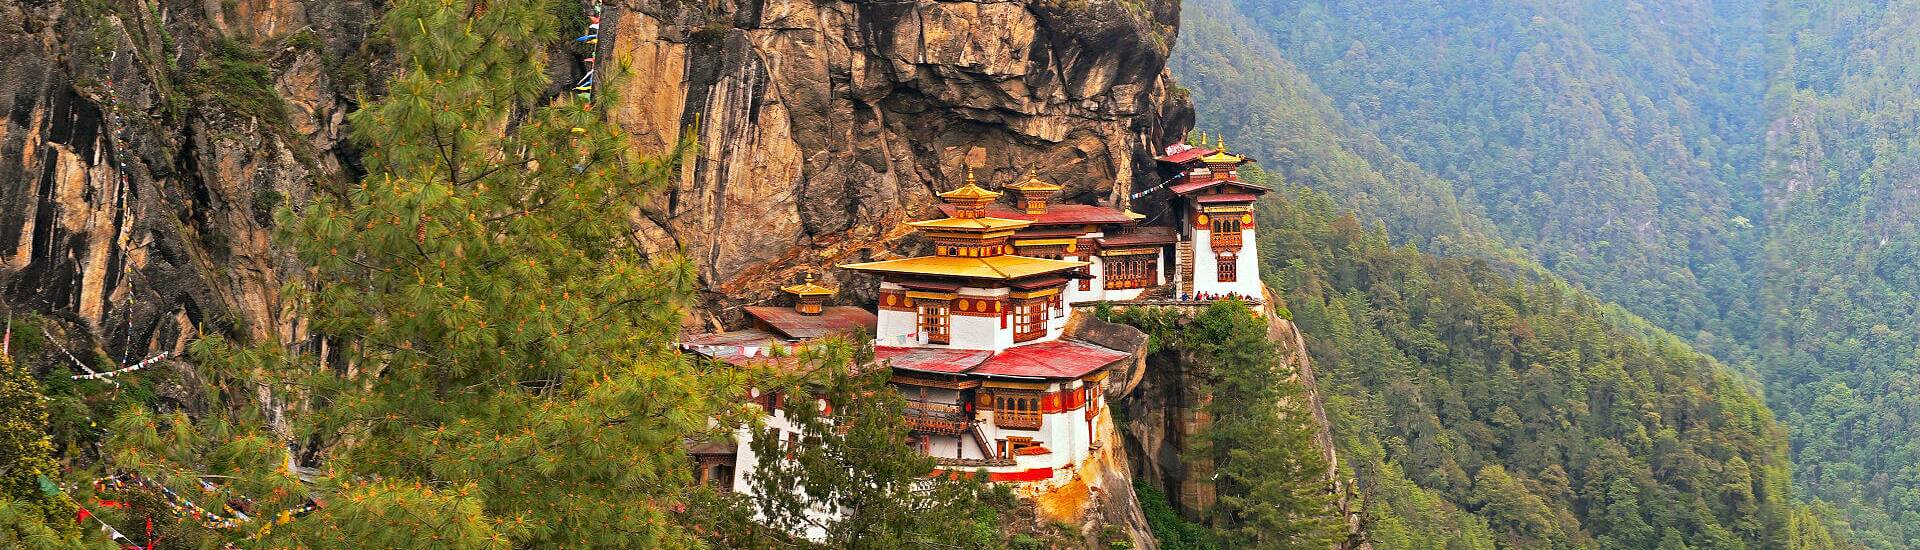 Das buddhistische Paro Taktsang Kloster thront majestätisch in Bhutan. Entdecken Sie die beste Reisezeit!